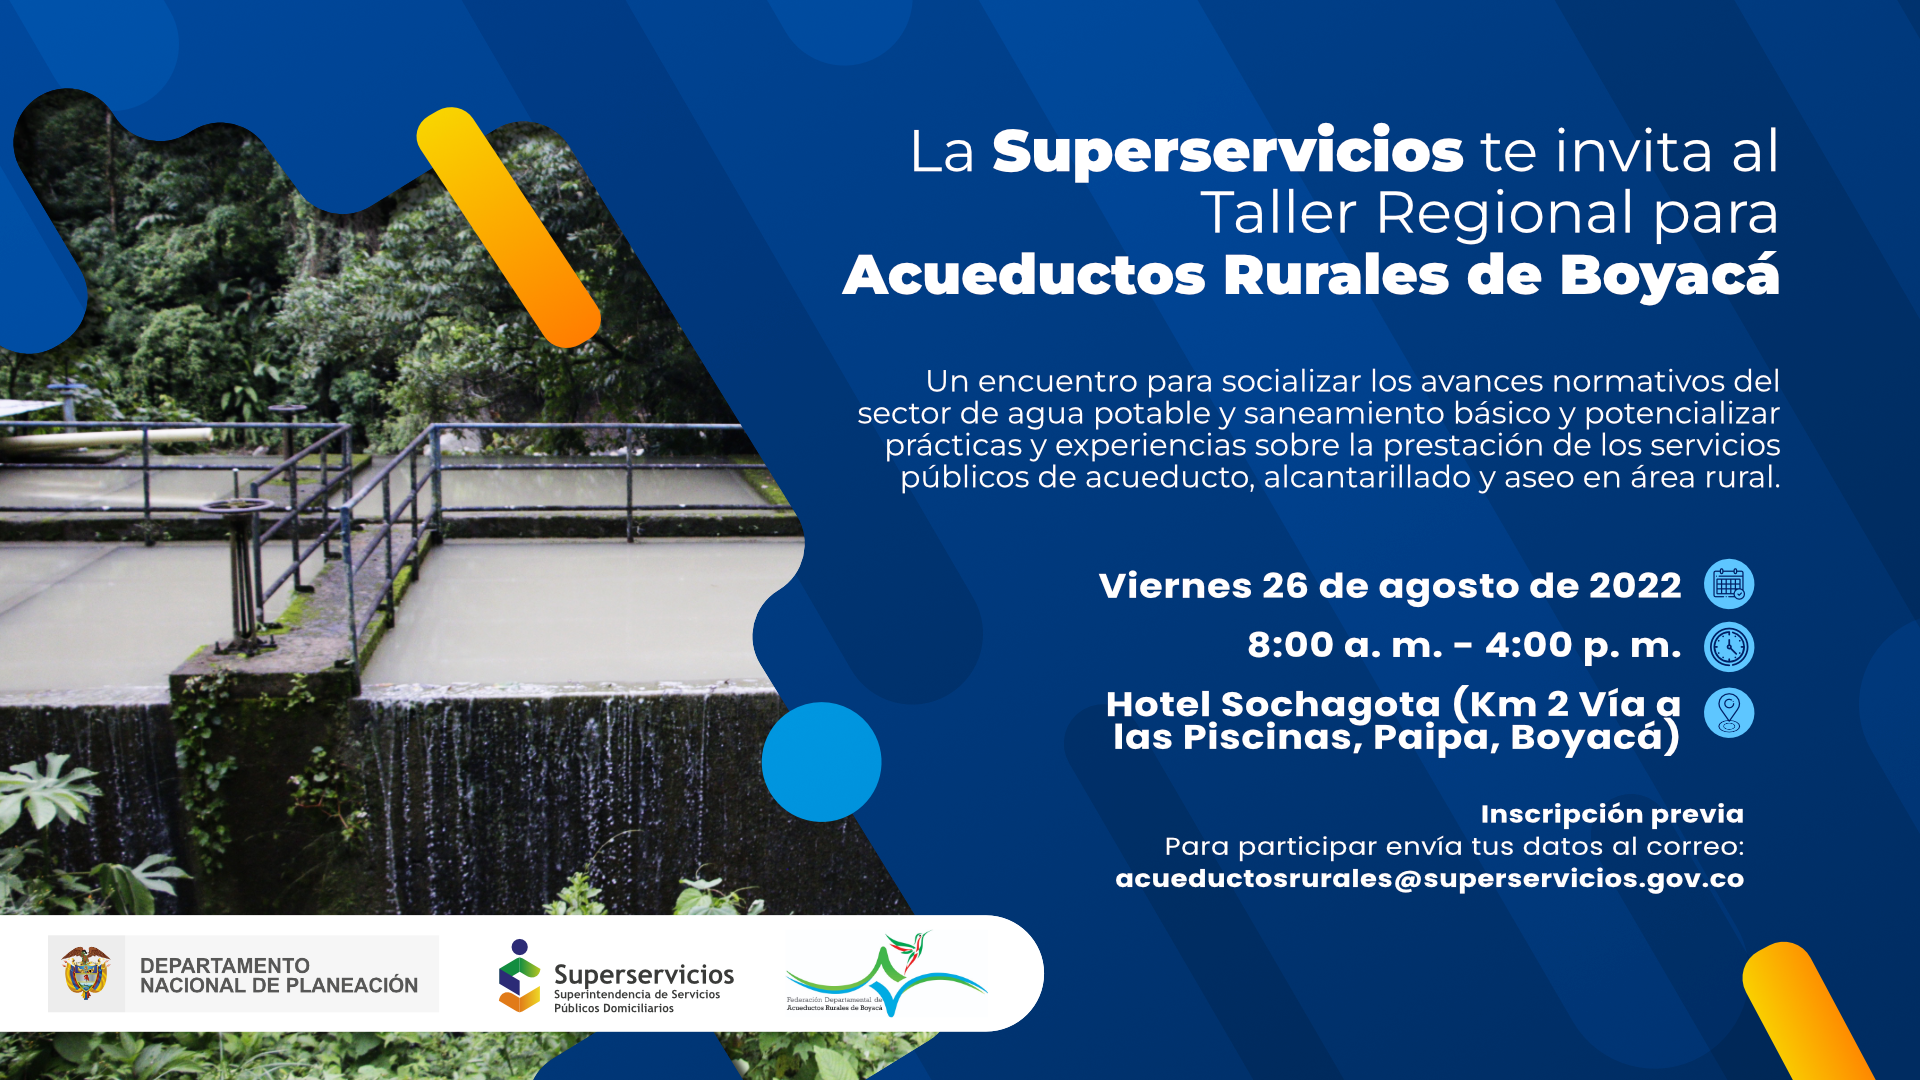 Taller Regional para Acueductos Rurales de Boyacá,  para socializar los avances normativos del sector de agua potable
